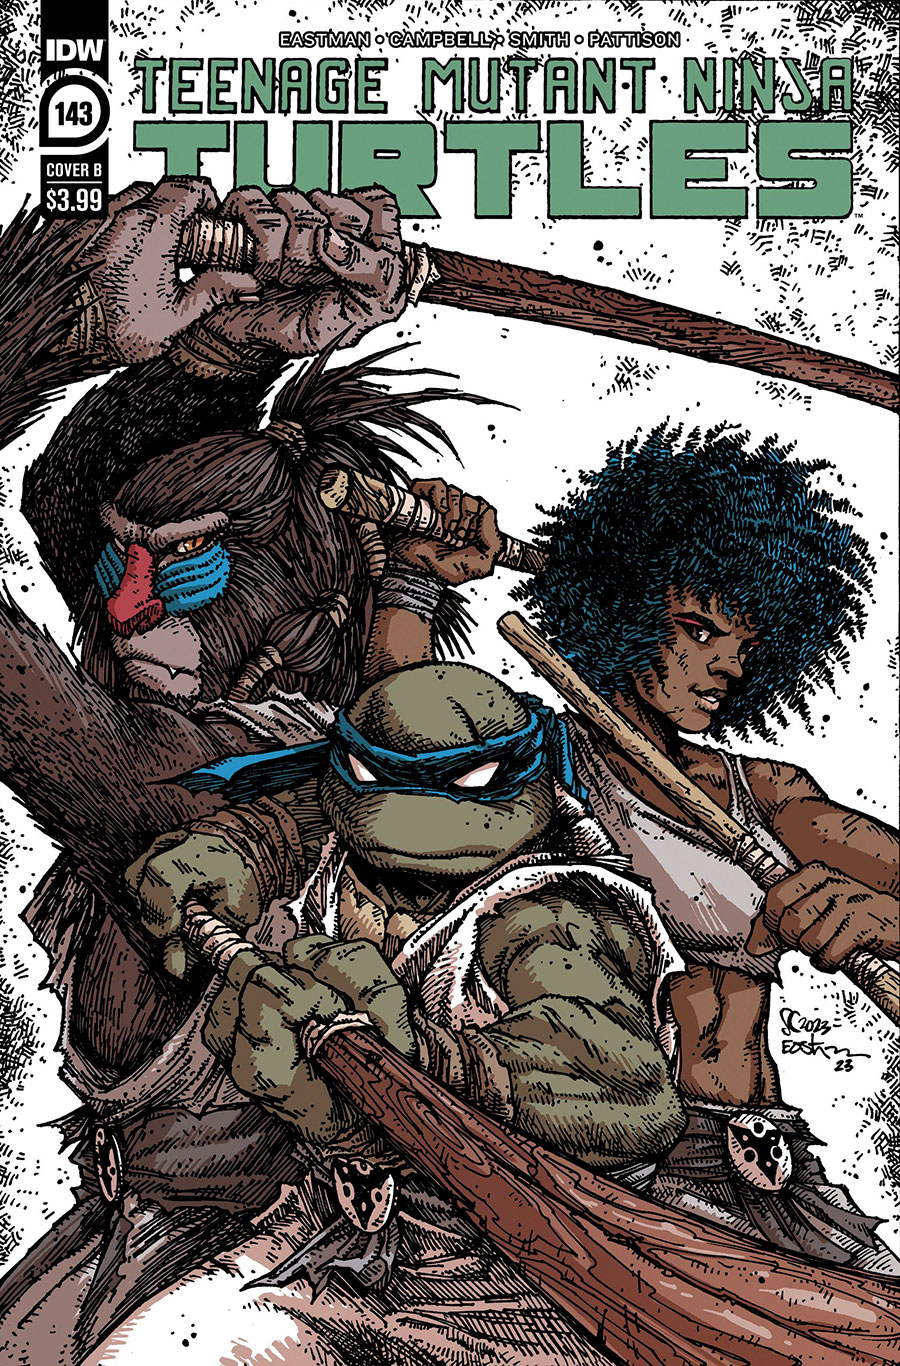 Teenage Mutant Ninja Turtles Vol 5 #143 Cover B Variant Kevin Eastman Cover